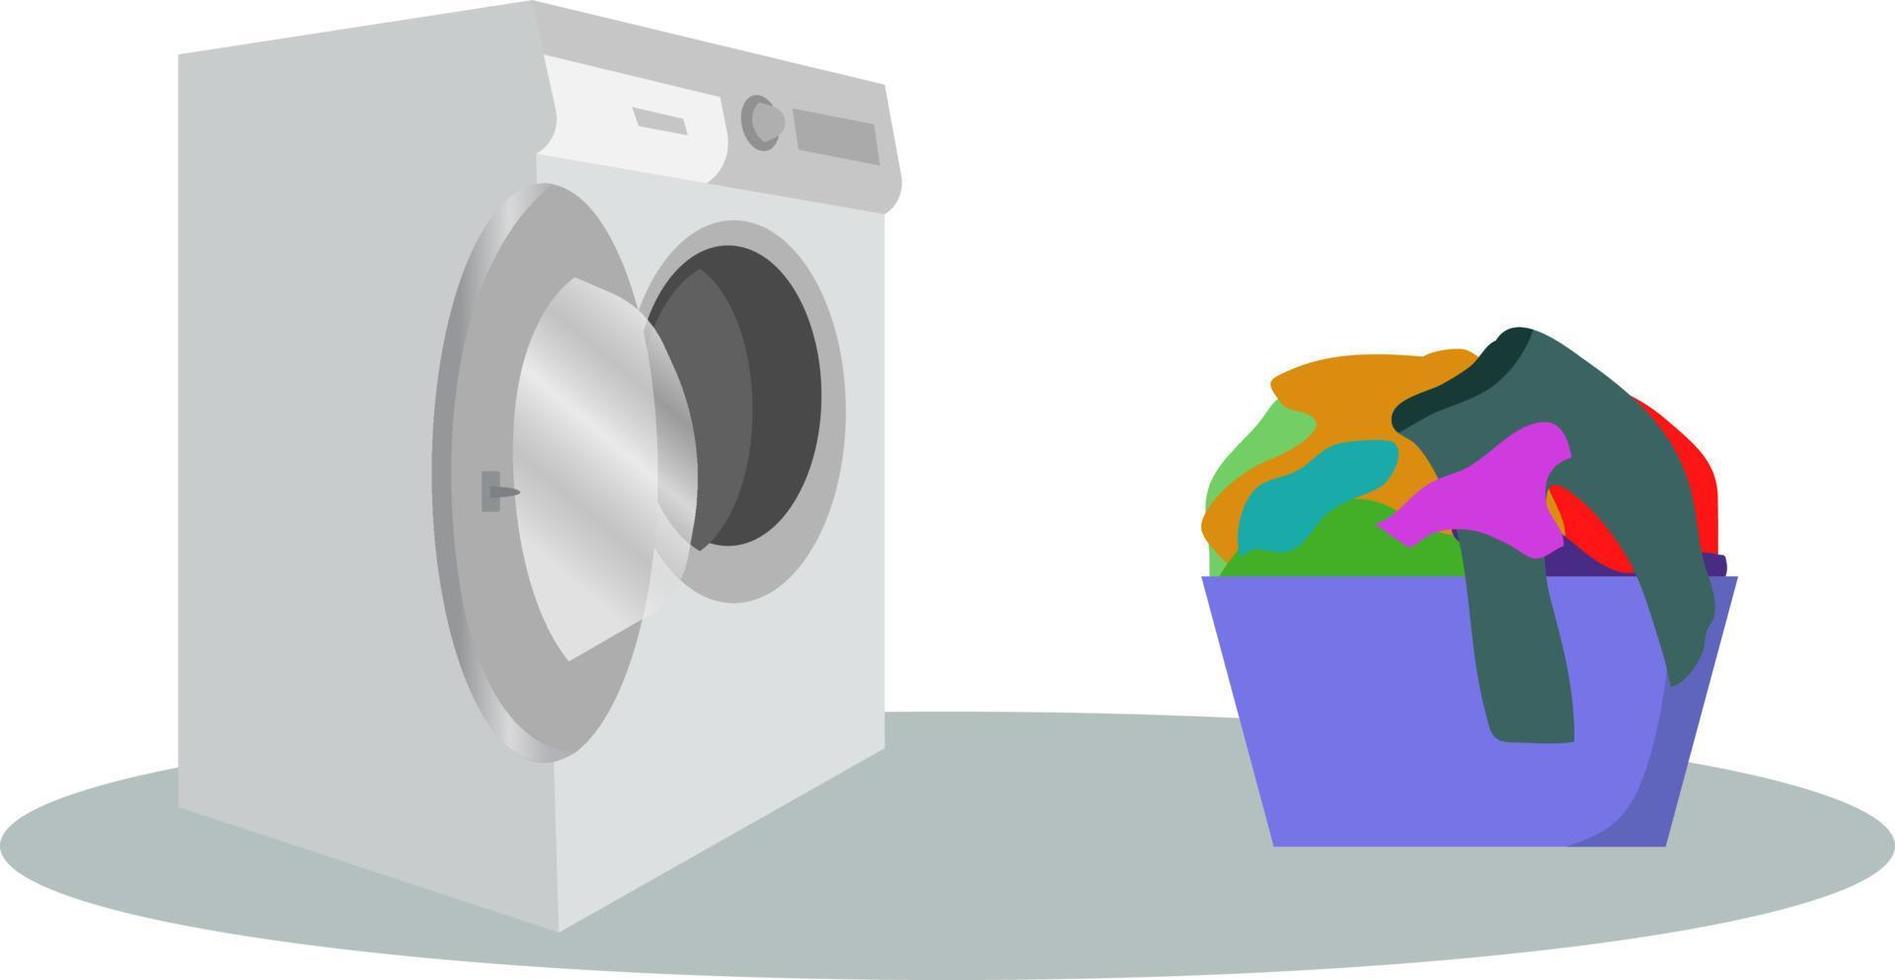 het wassen machine met mand. vlak stijl vector illustratie, het wassen machine en wasserij mand illustratie wasmachine met vuil kleren schets illustratie.